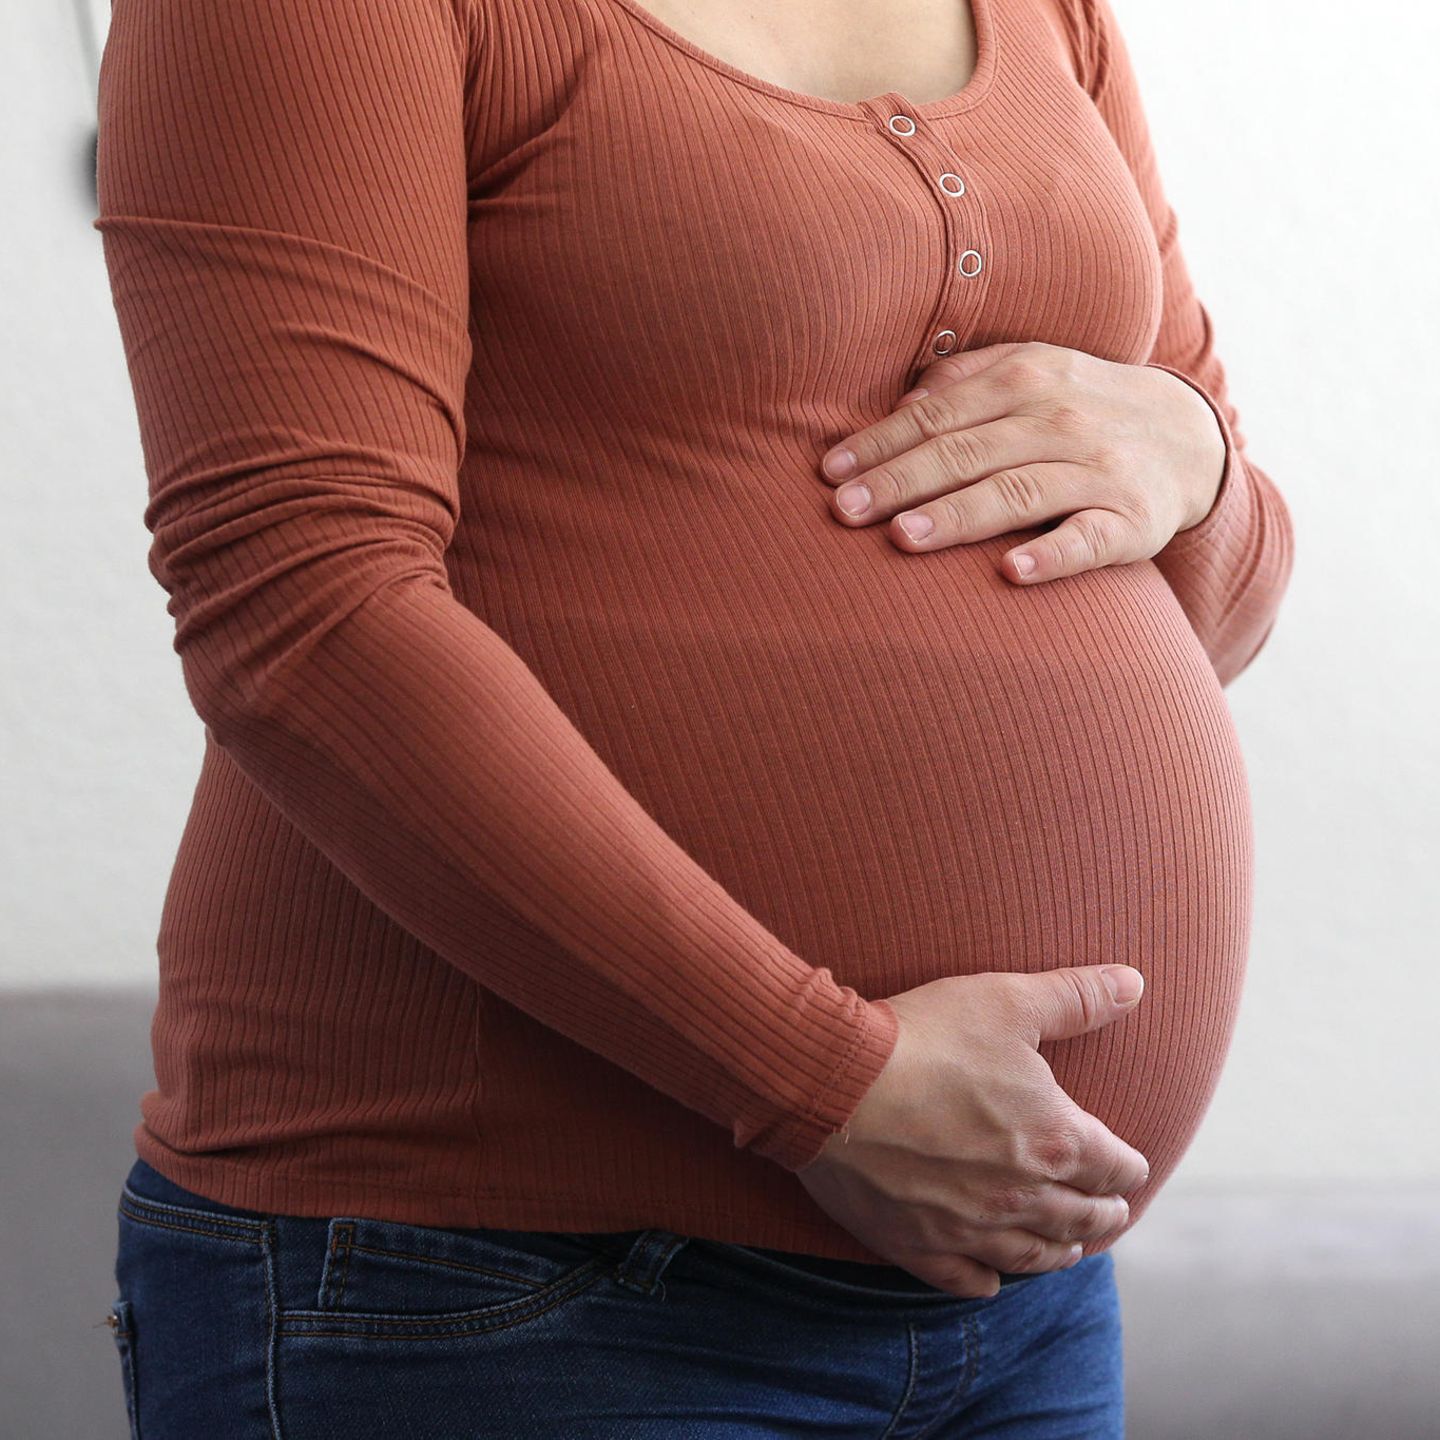 12 schwanger jahren mit Schwanger mit